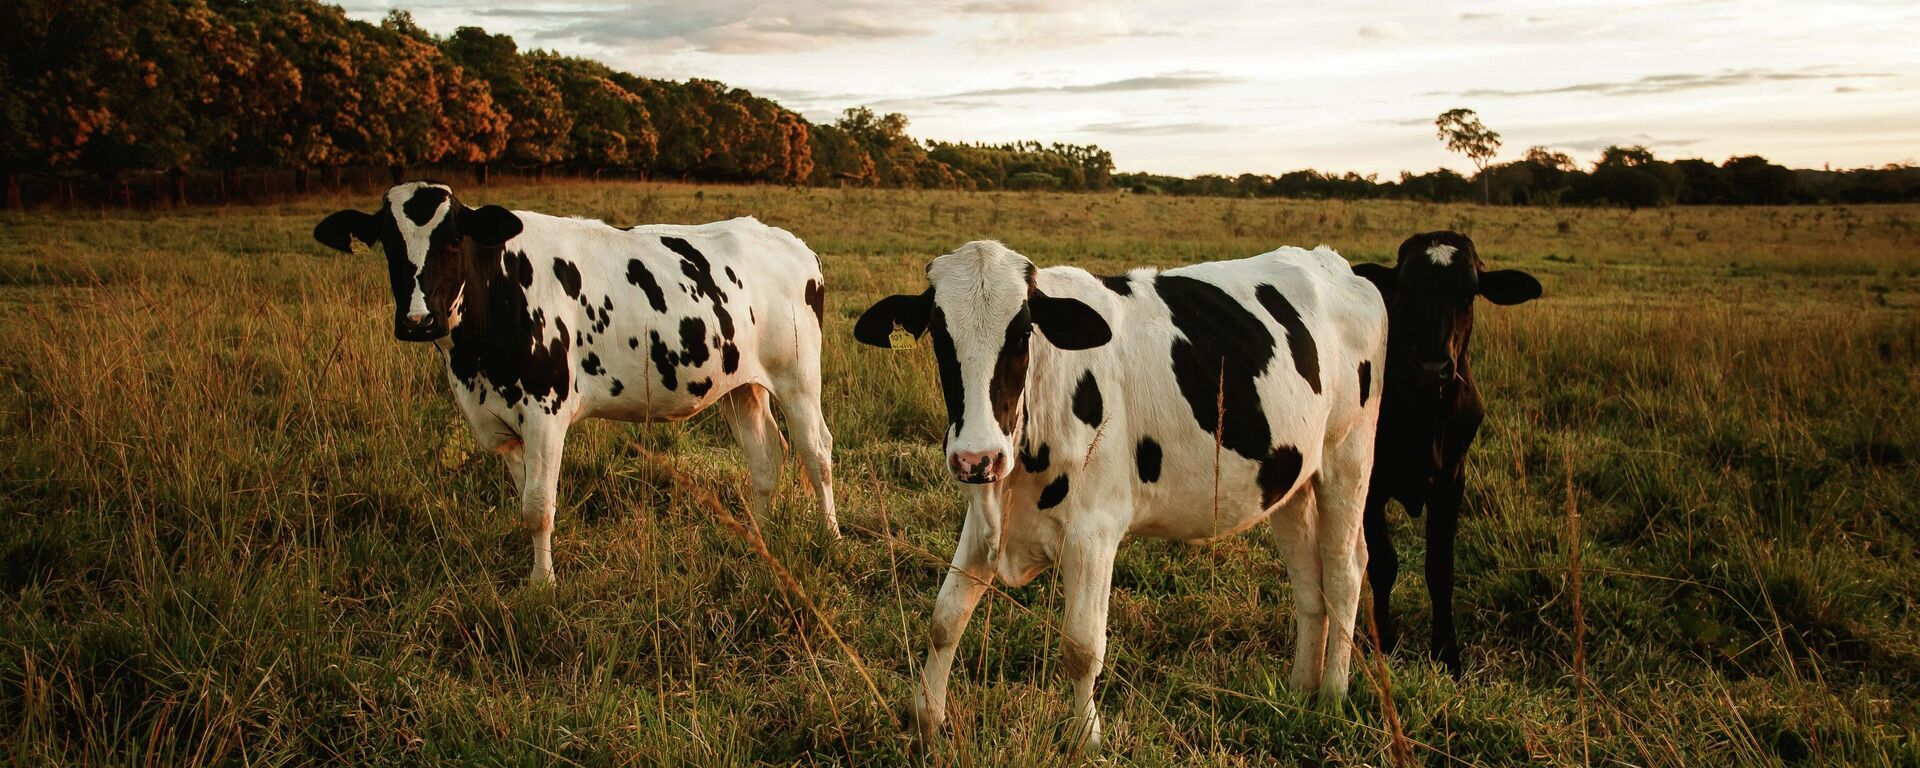 Imagen referencial de vacas - Sputnik Mundo, 1920, 17.11.2021